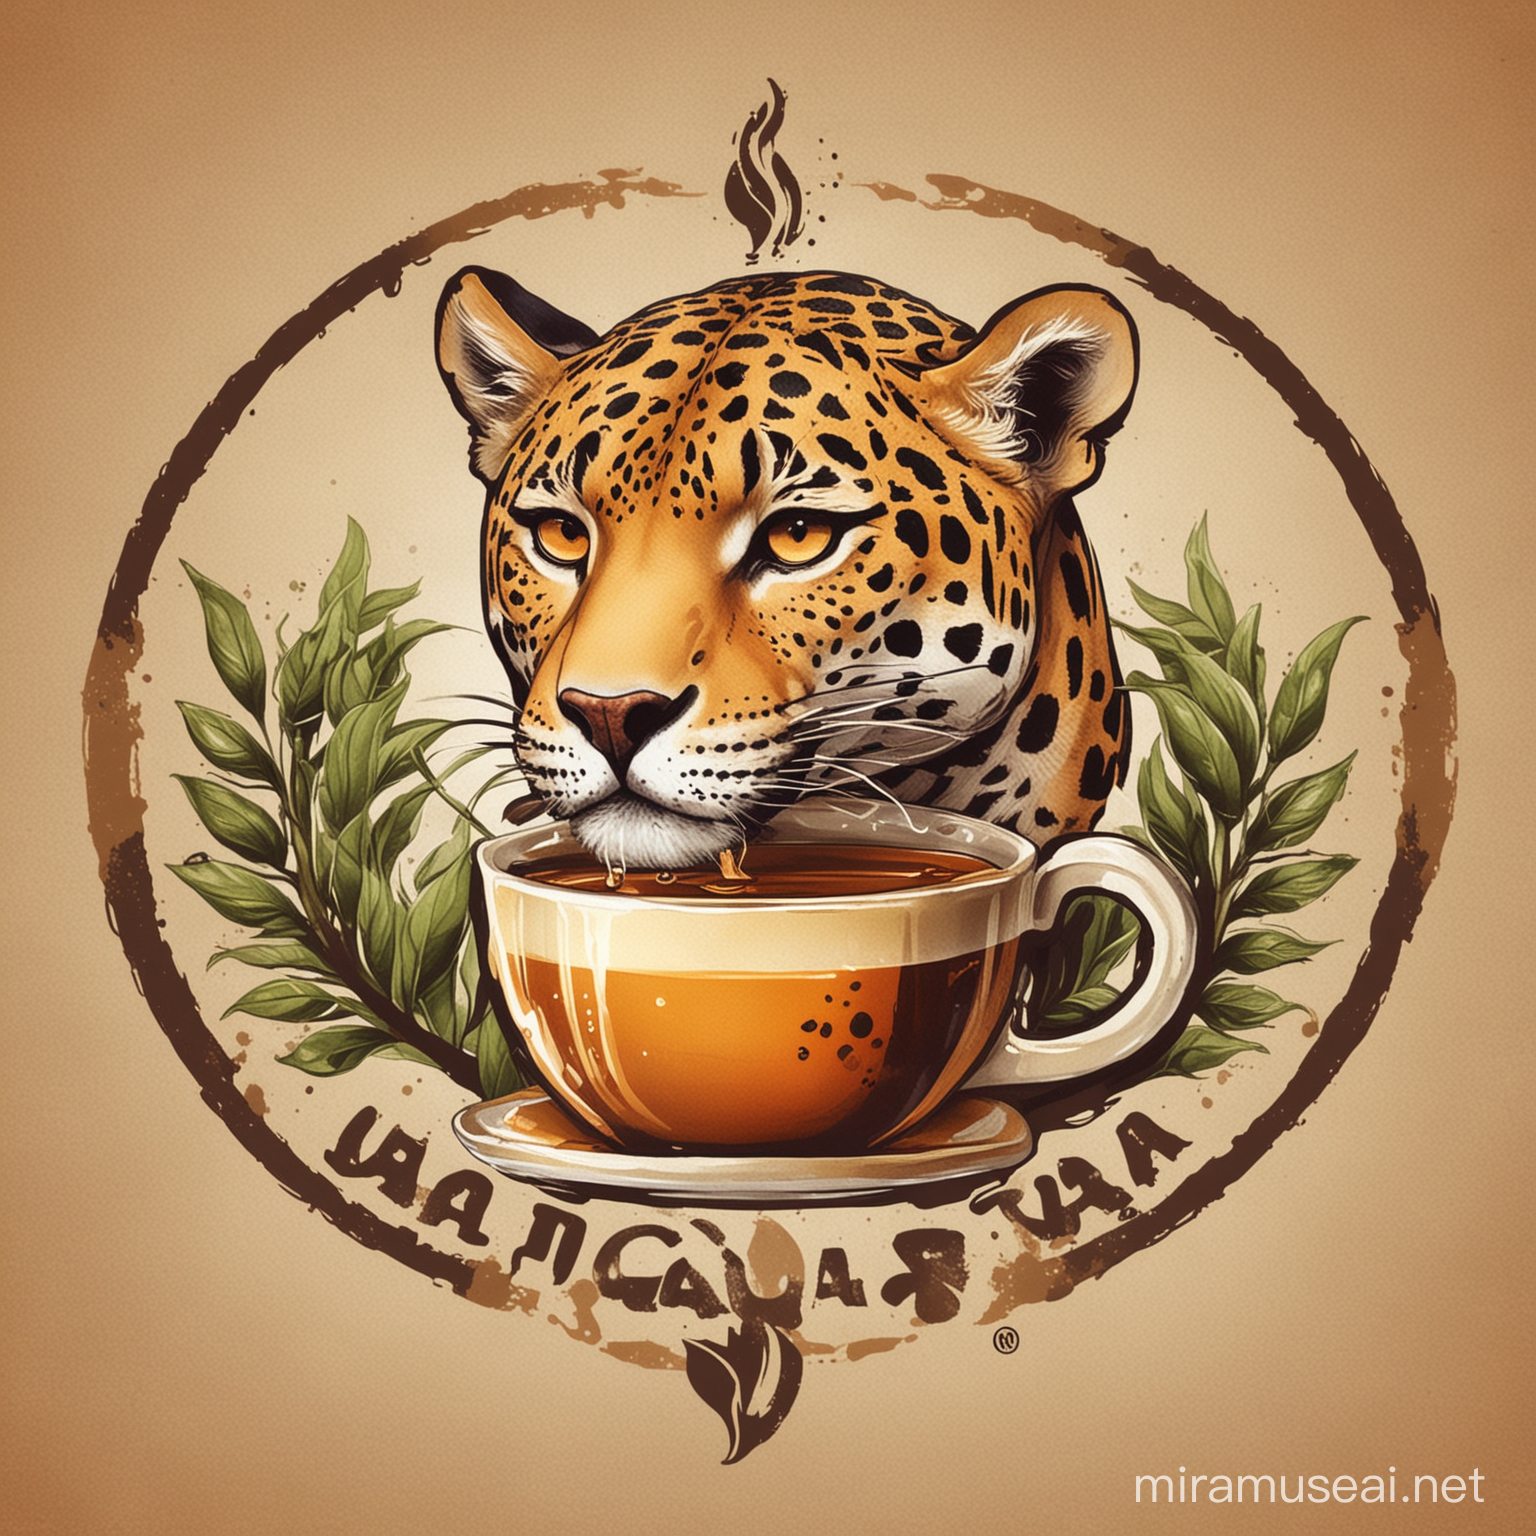 Jaguar Drinking Java Tea Logo Design Concept for a Unique Cafe Experience